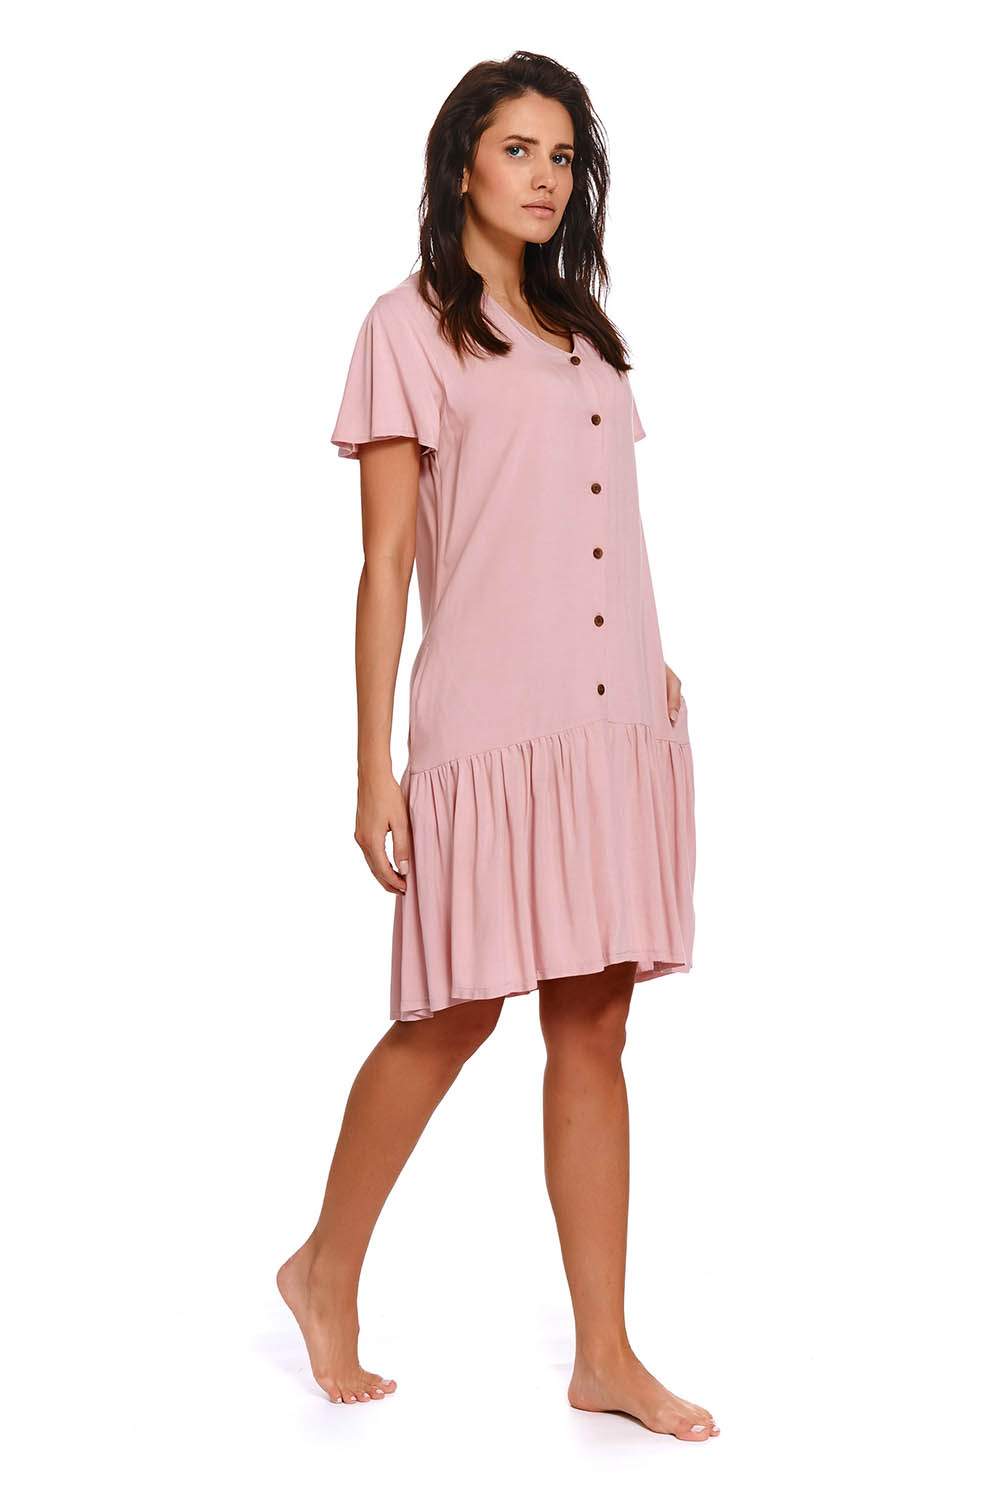 Ночная сорочка женская Doctor Nap DN_TM.4236 Magic Rose розовая M